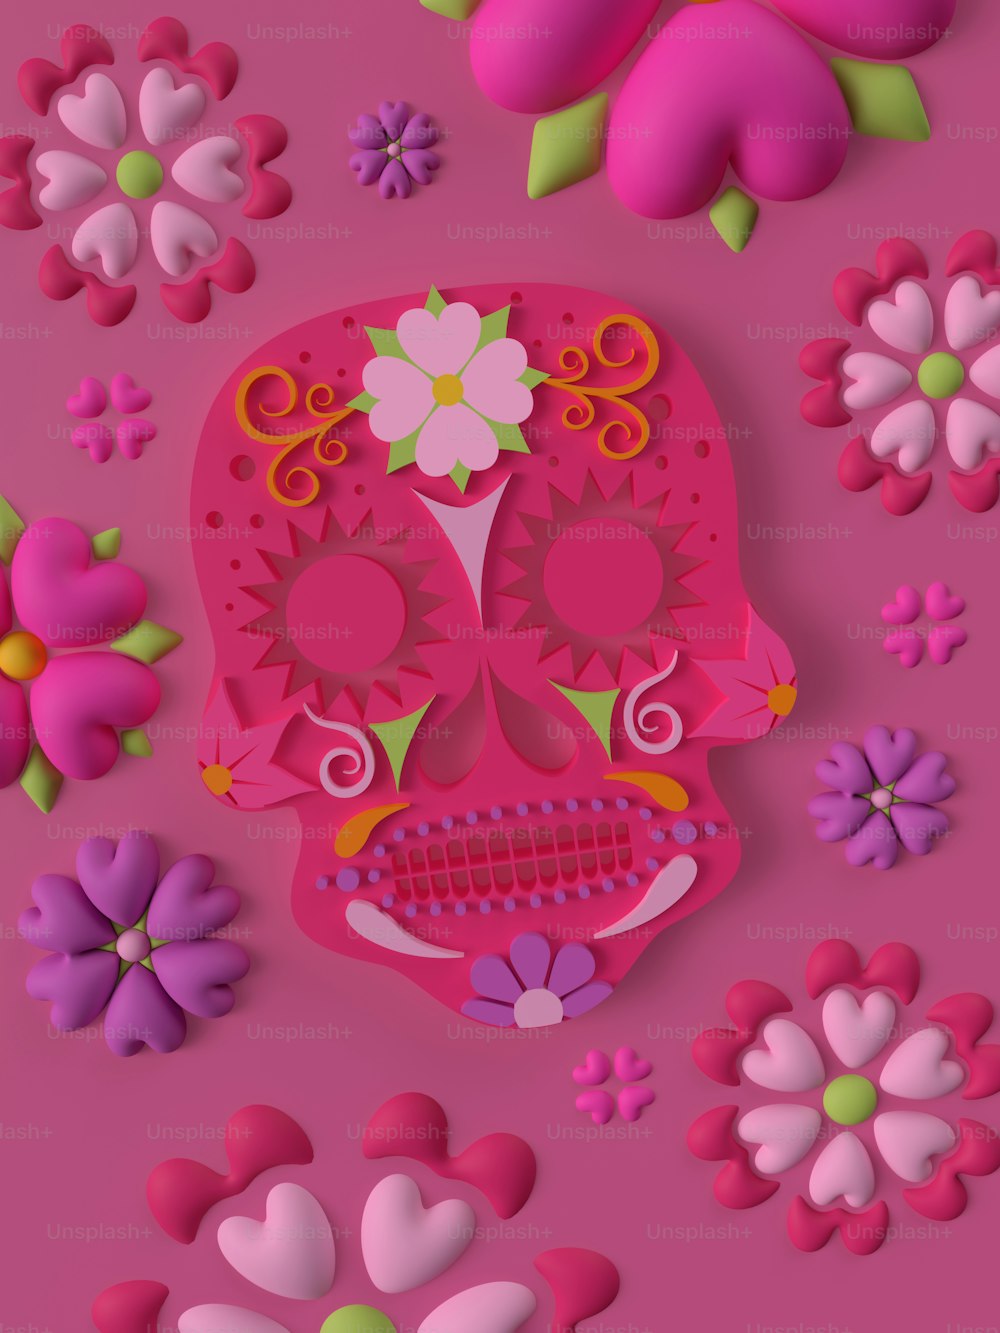 ein Scherenschnitt eines rosafarbenen Schädels, umgeben von Blumen